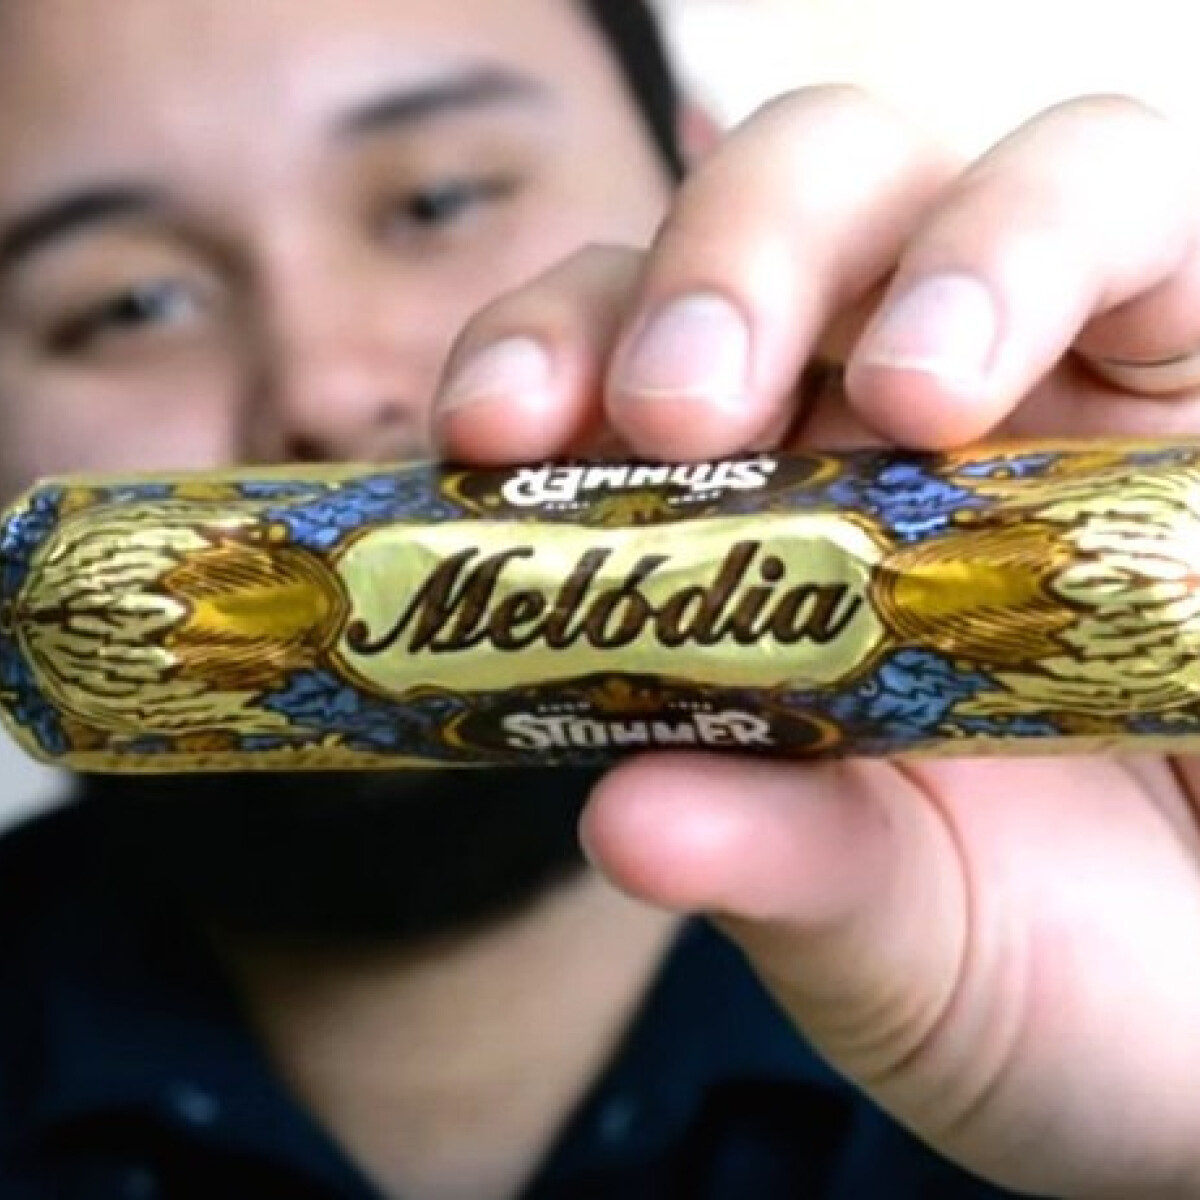 Odáig van ez az amerikai blogger a magyar Melódia csokiért és sajtos tallérért